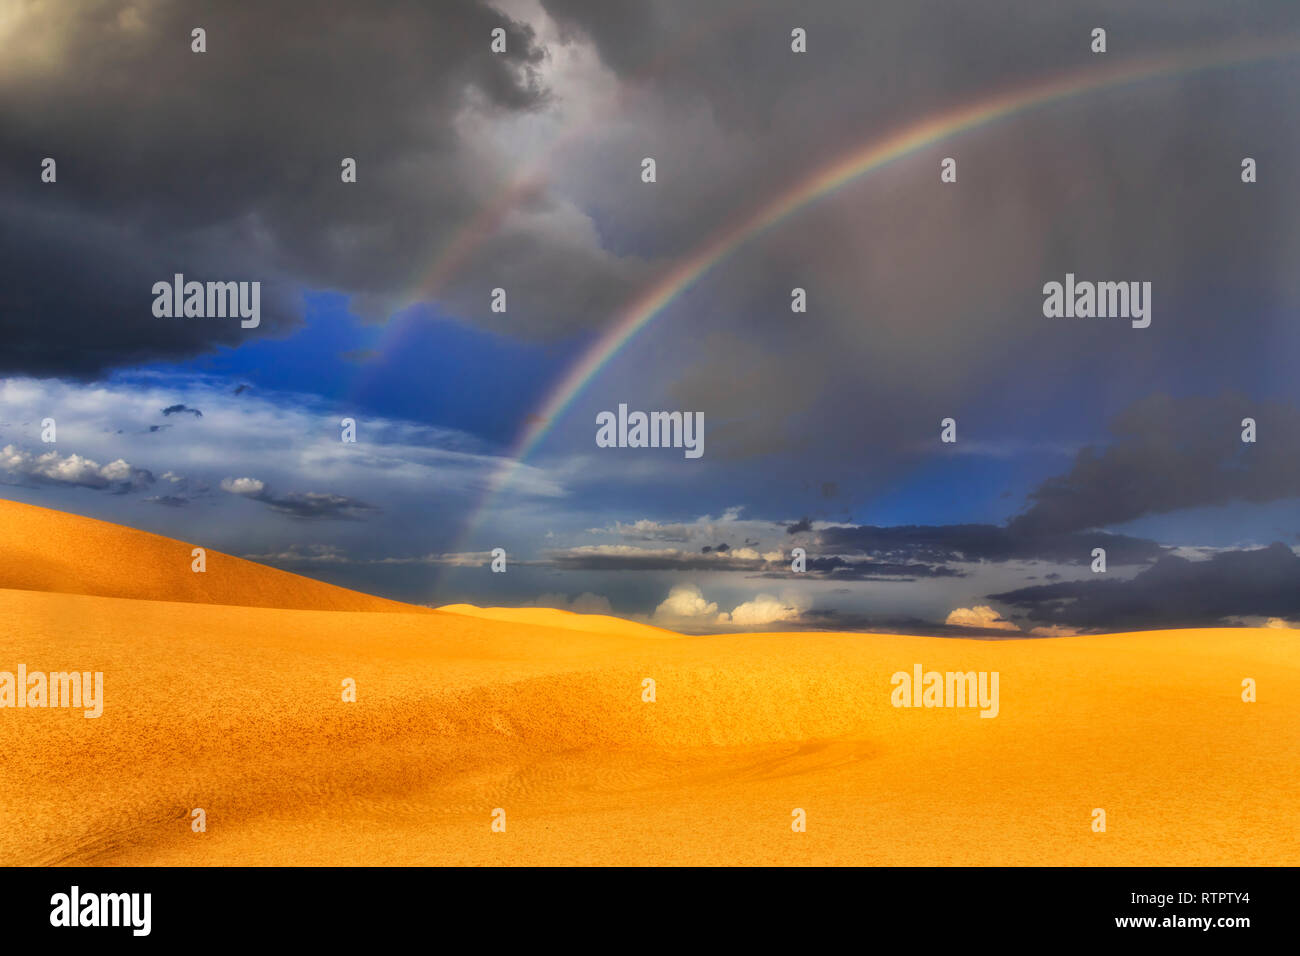 Regen, Sturm und Regenbogen über Sanddünen der Wüste am Stockton Beach in Australien - moody Landschaft des Nationalparks. Stockfoto